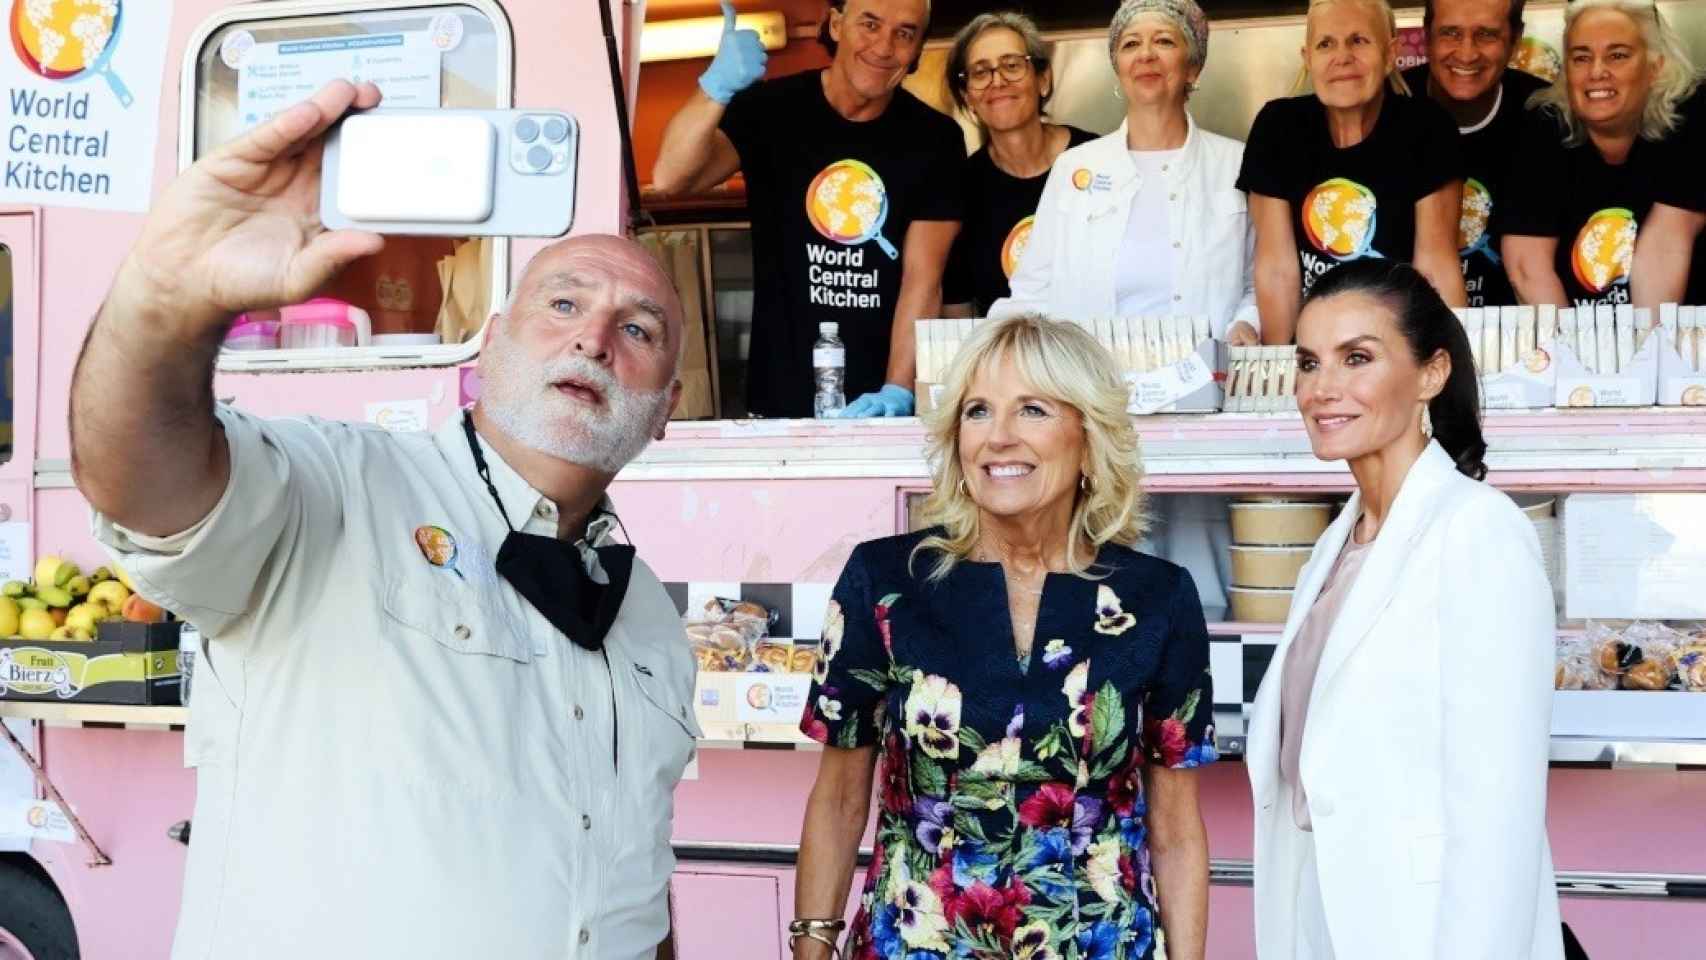 El chef José Andrés se hace un 'selfie' con la primera dama Jill Biden, la reina Letizia y el equipo de la ONG World Central Kitchen